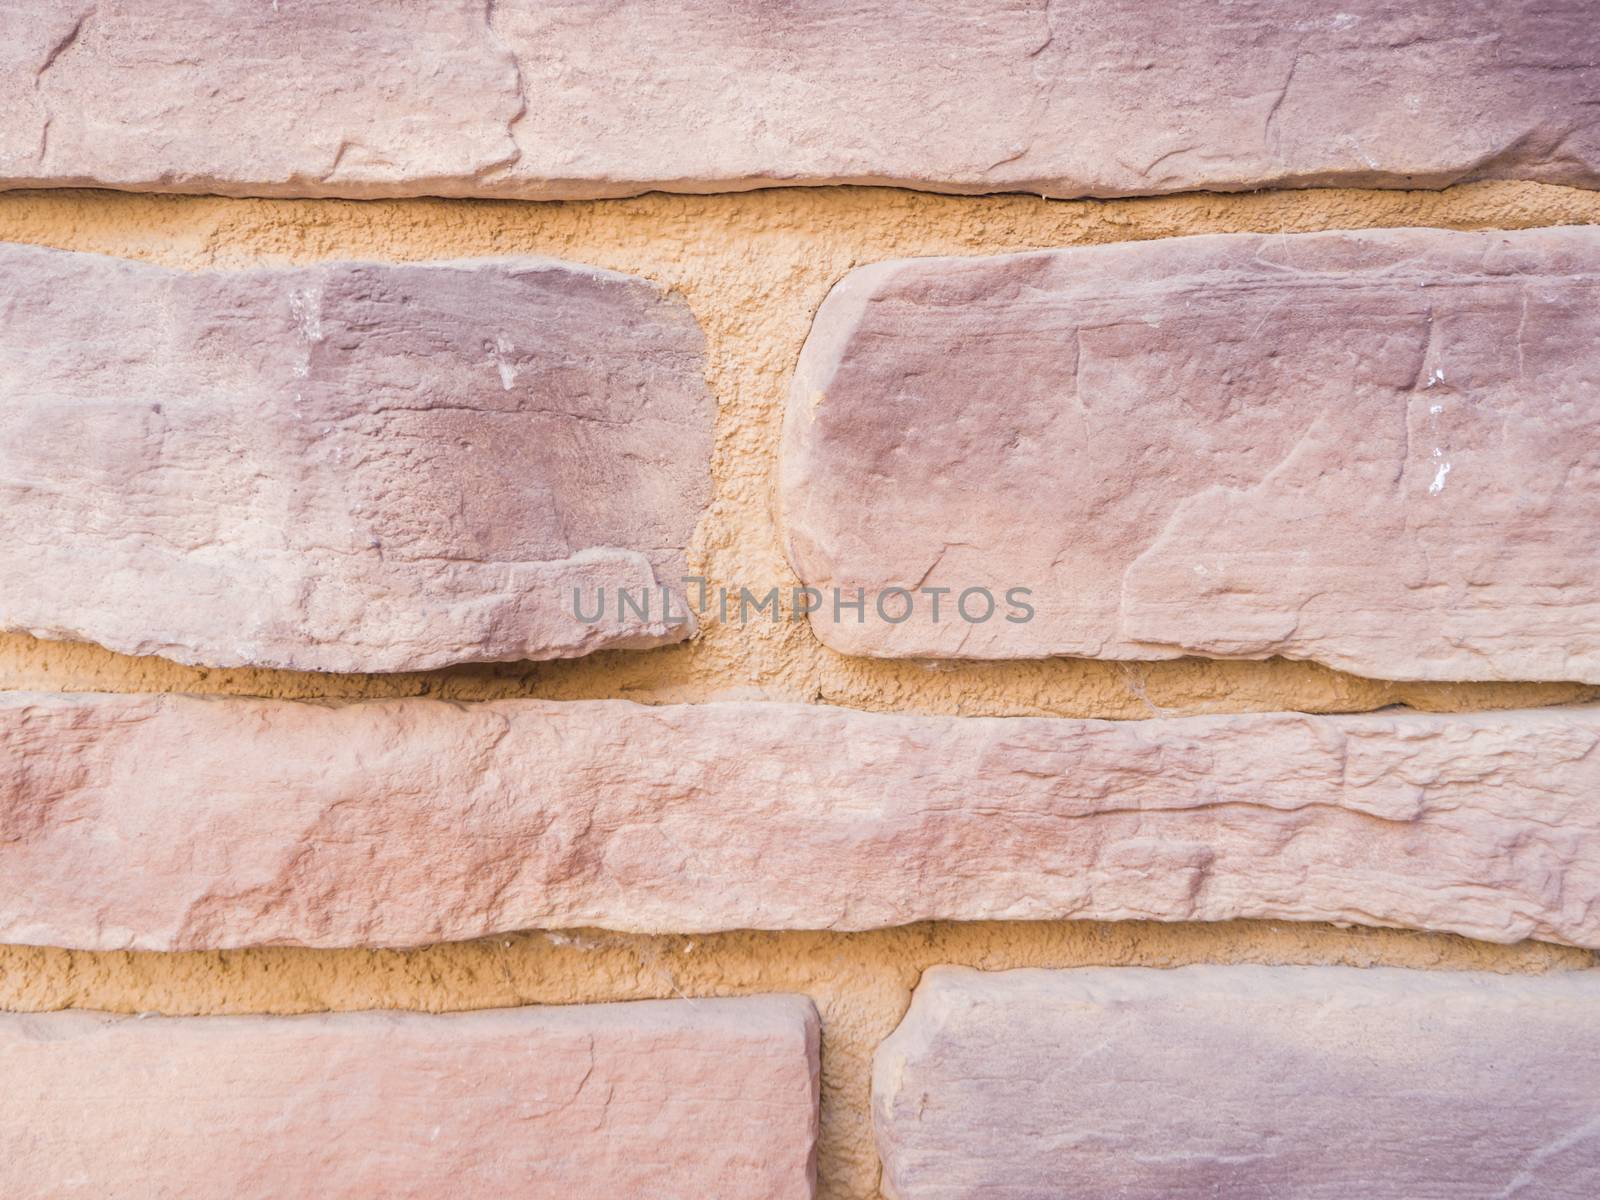 Mmasonry of stoun wall, background by fascinadora